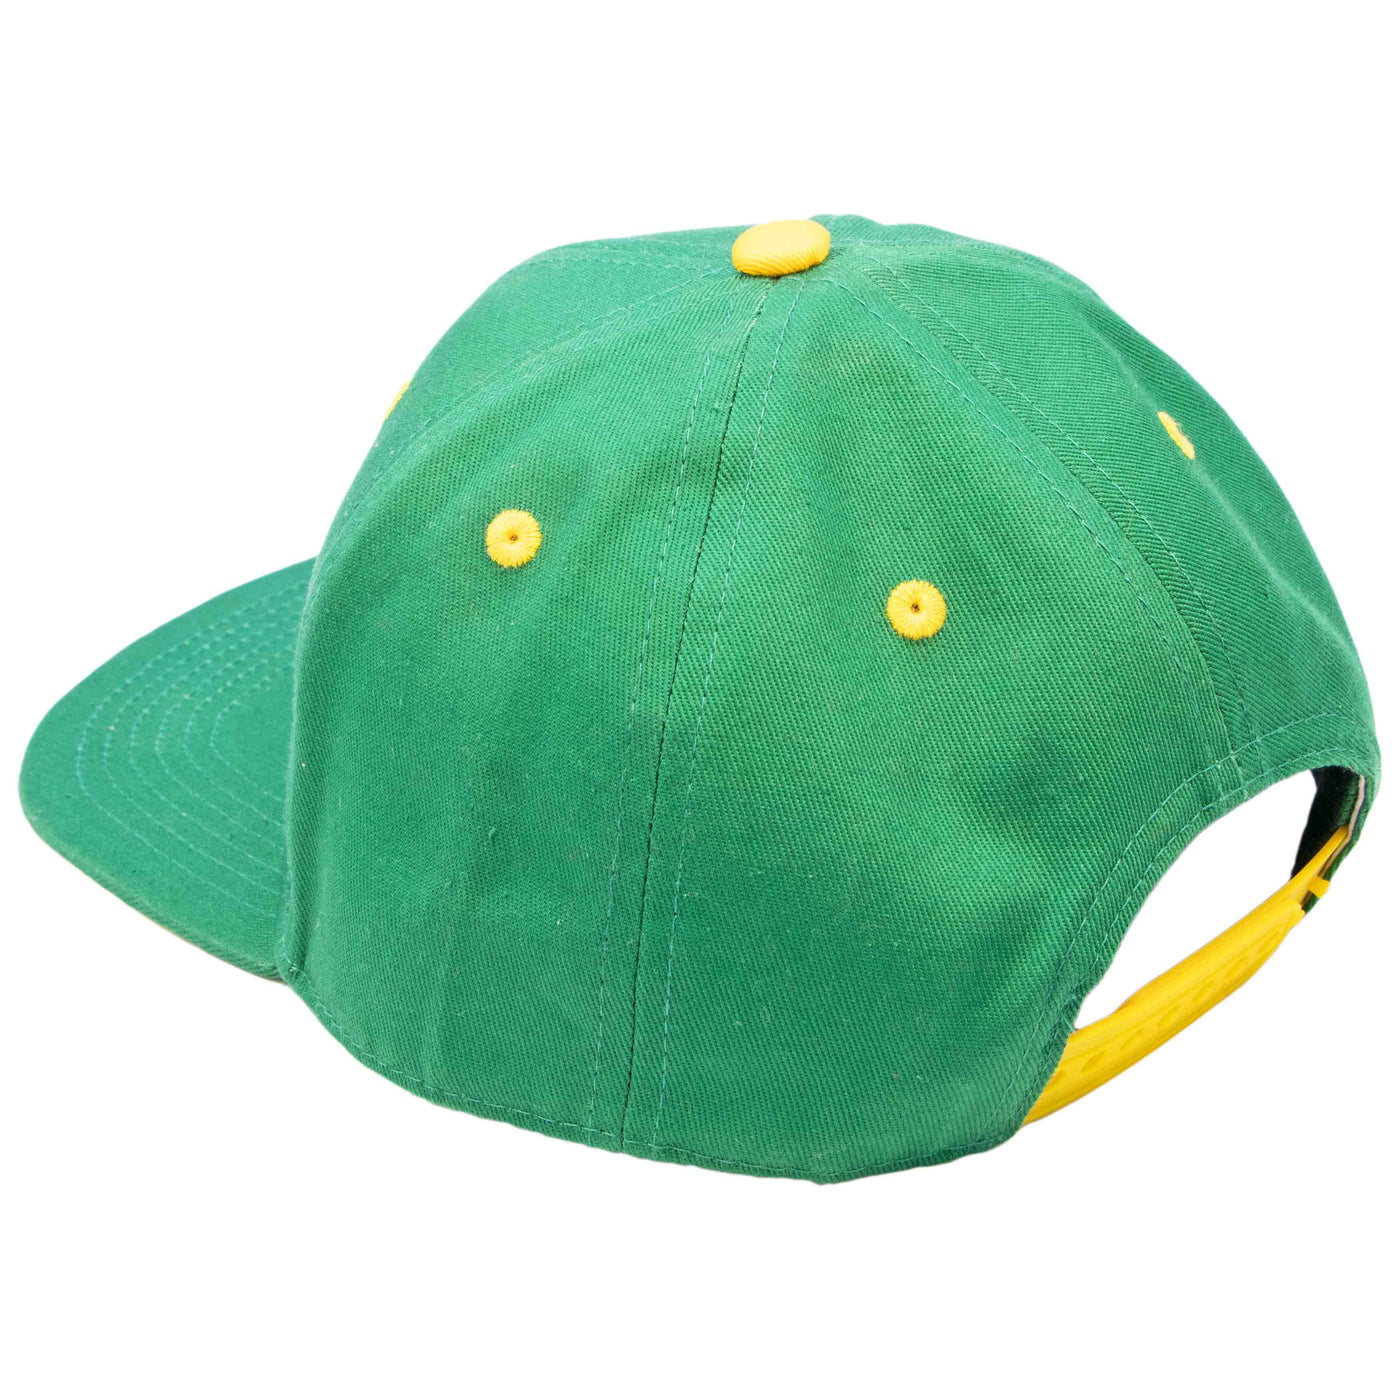 Kinder Snapback Cap - Pure Racing Green